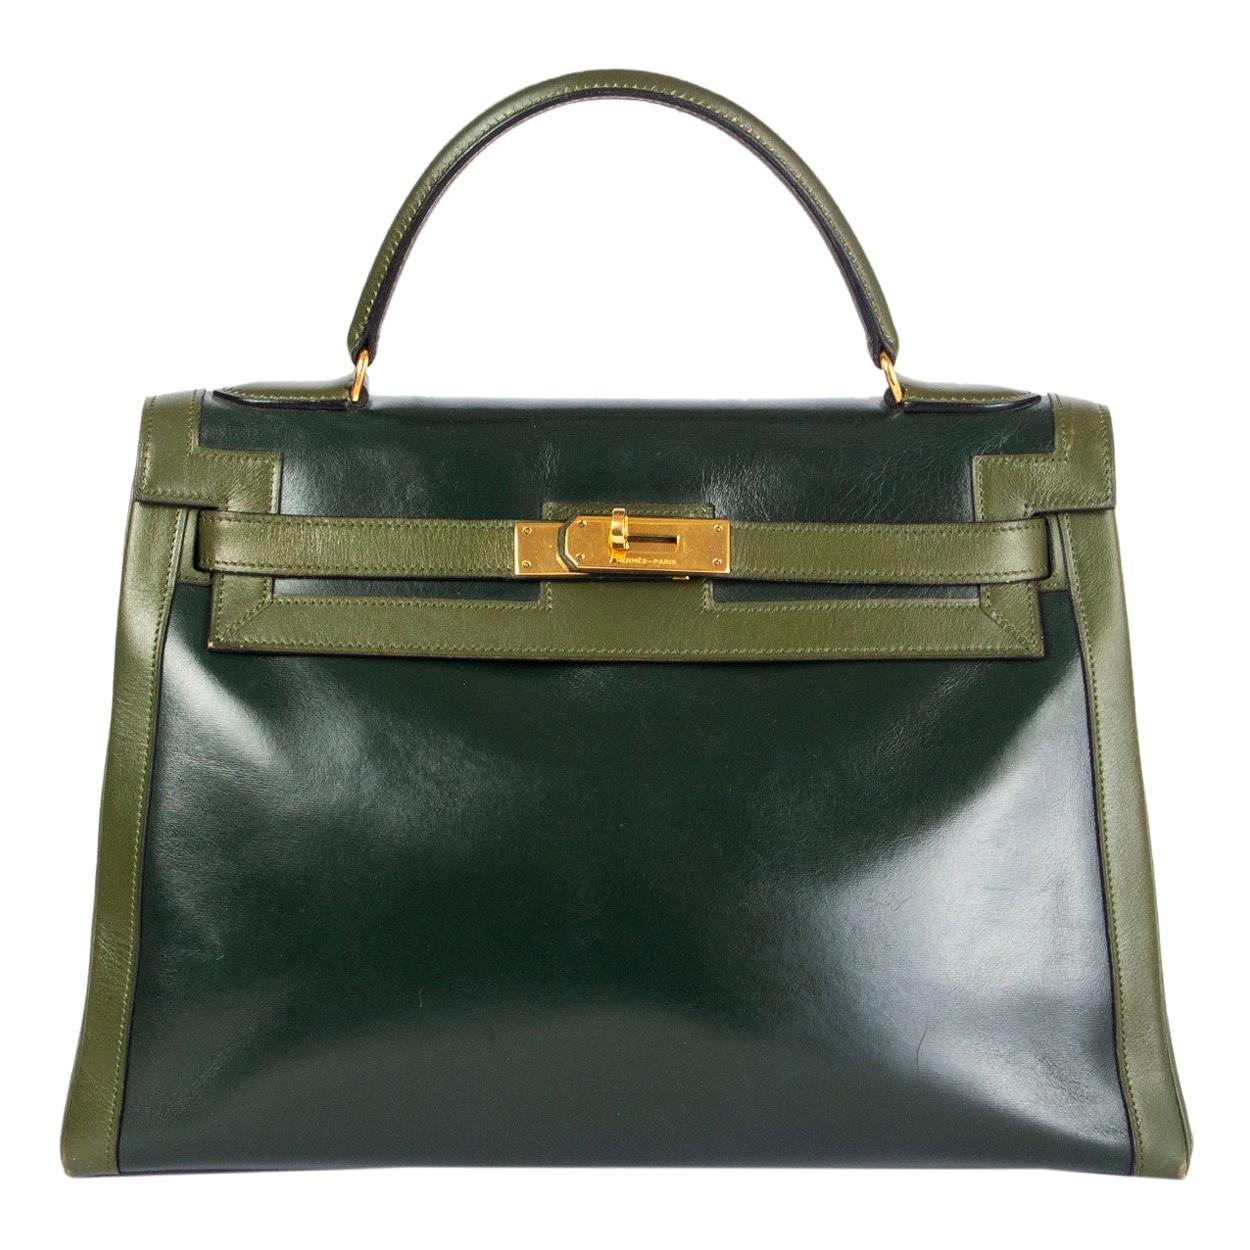 HERMES Vert green Box leather BI-COLOR KELLY 32 RETOURNE Bag Gold